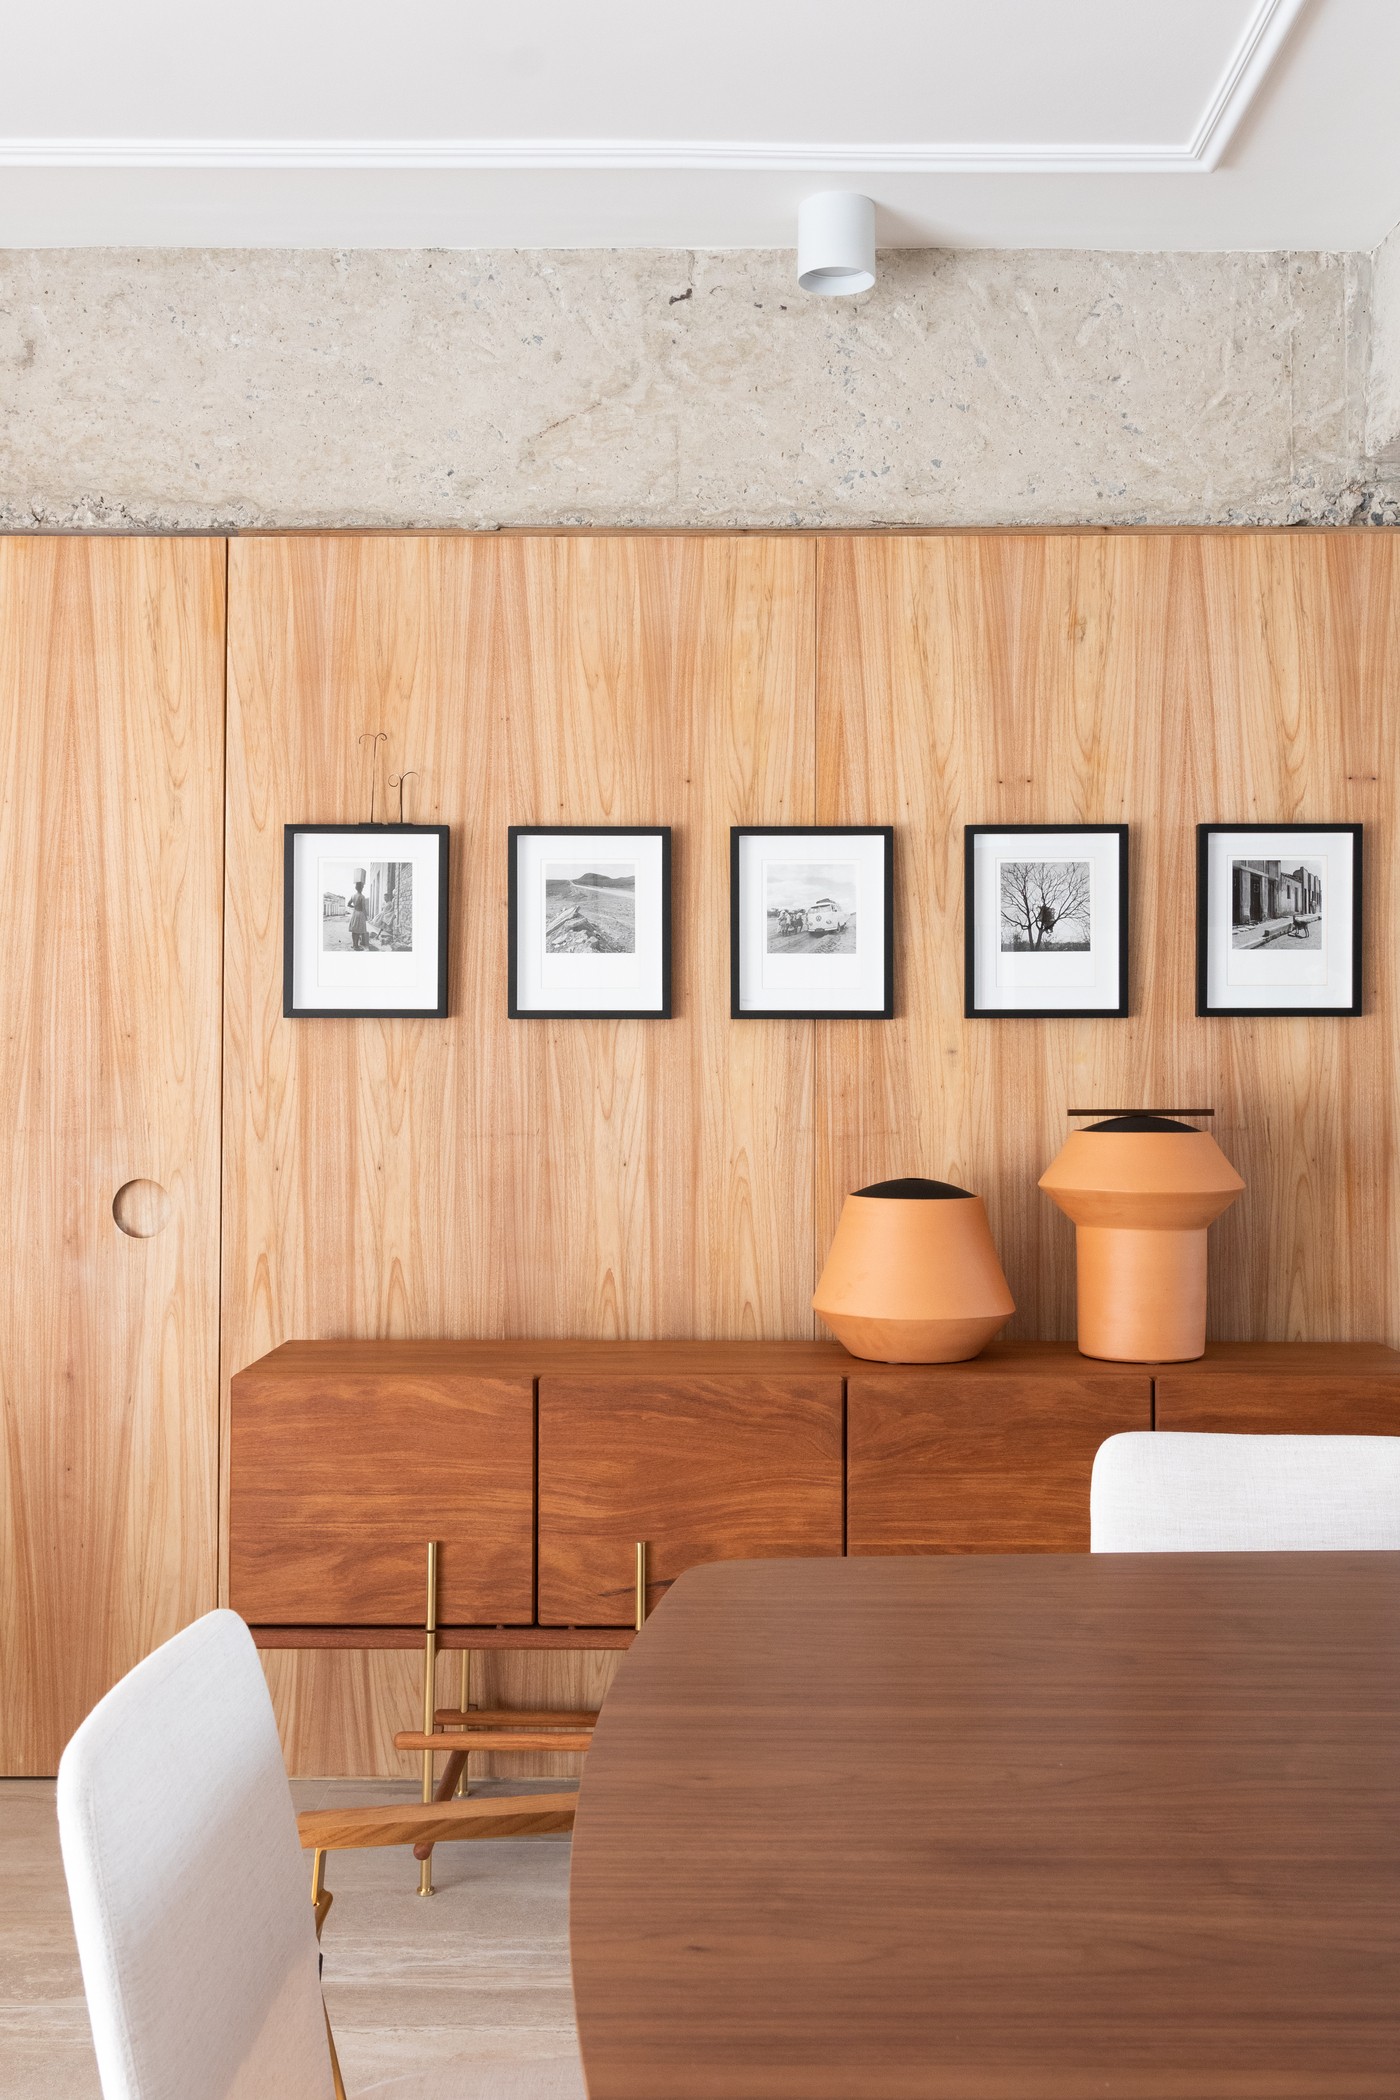 Décor do dia: salas de estar e jantar integradas com decoração atemporal e estruturas aparentes (Foto: Alexandre Disaro)